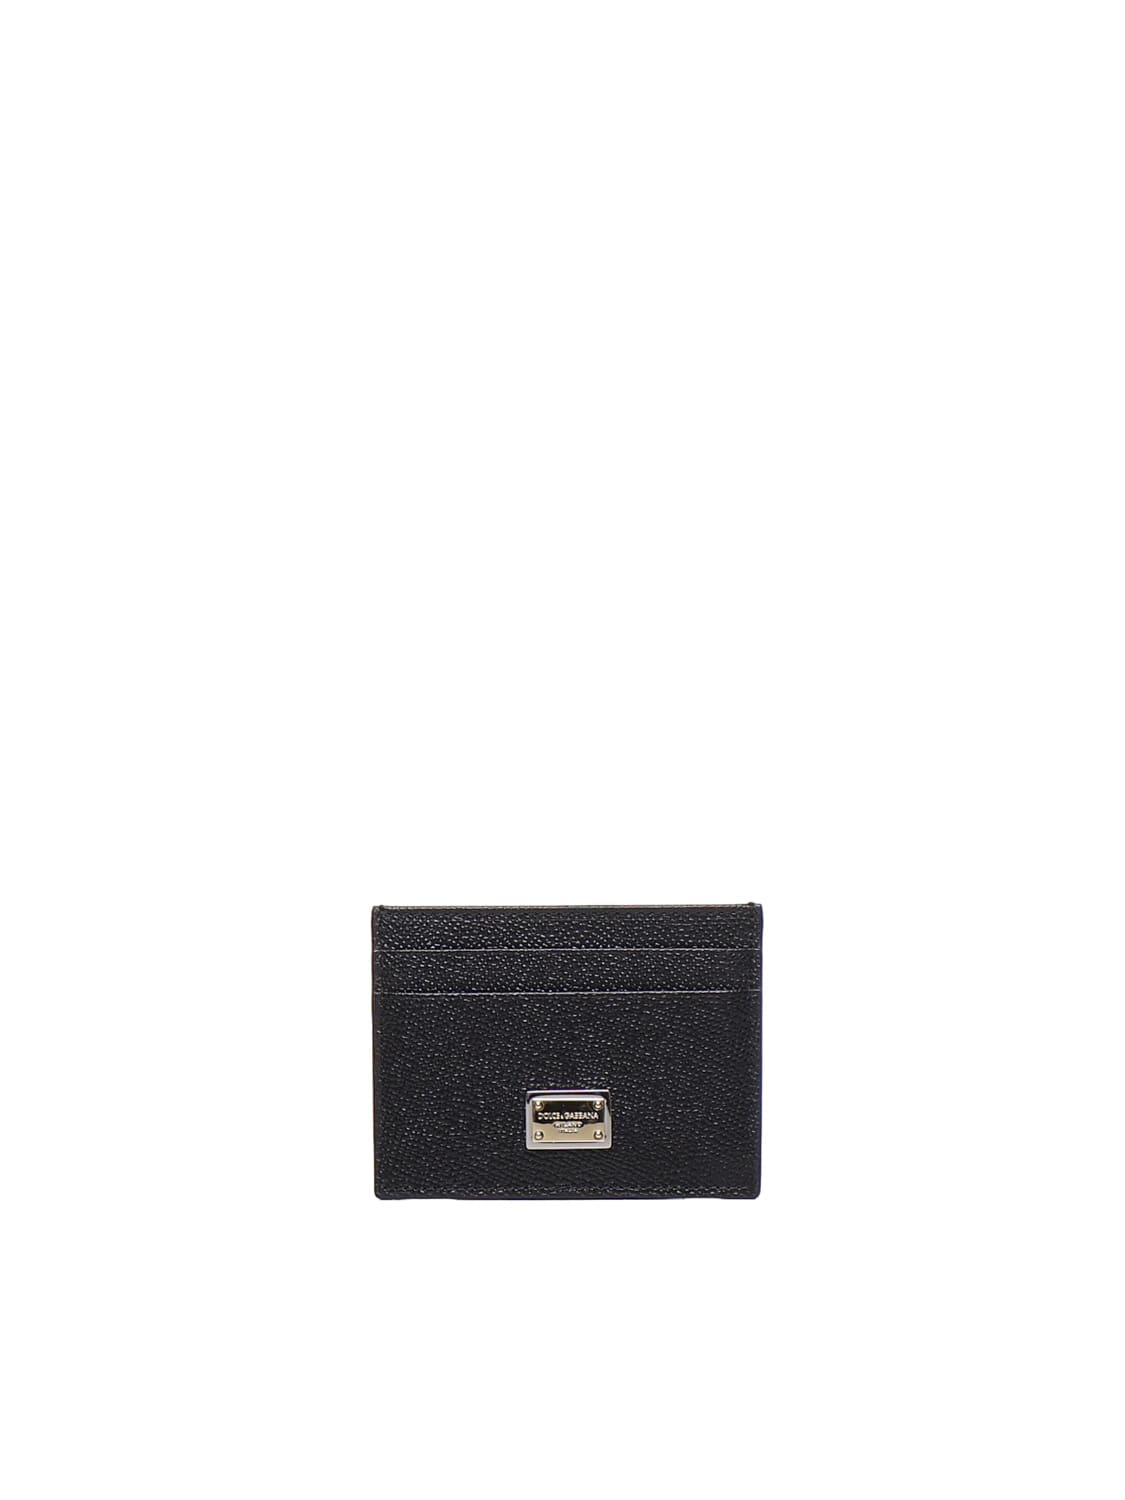 Dolce & Gabbana Calfskin Credit Card Holder In Nero